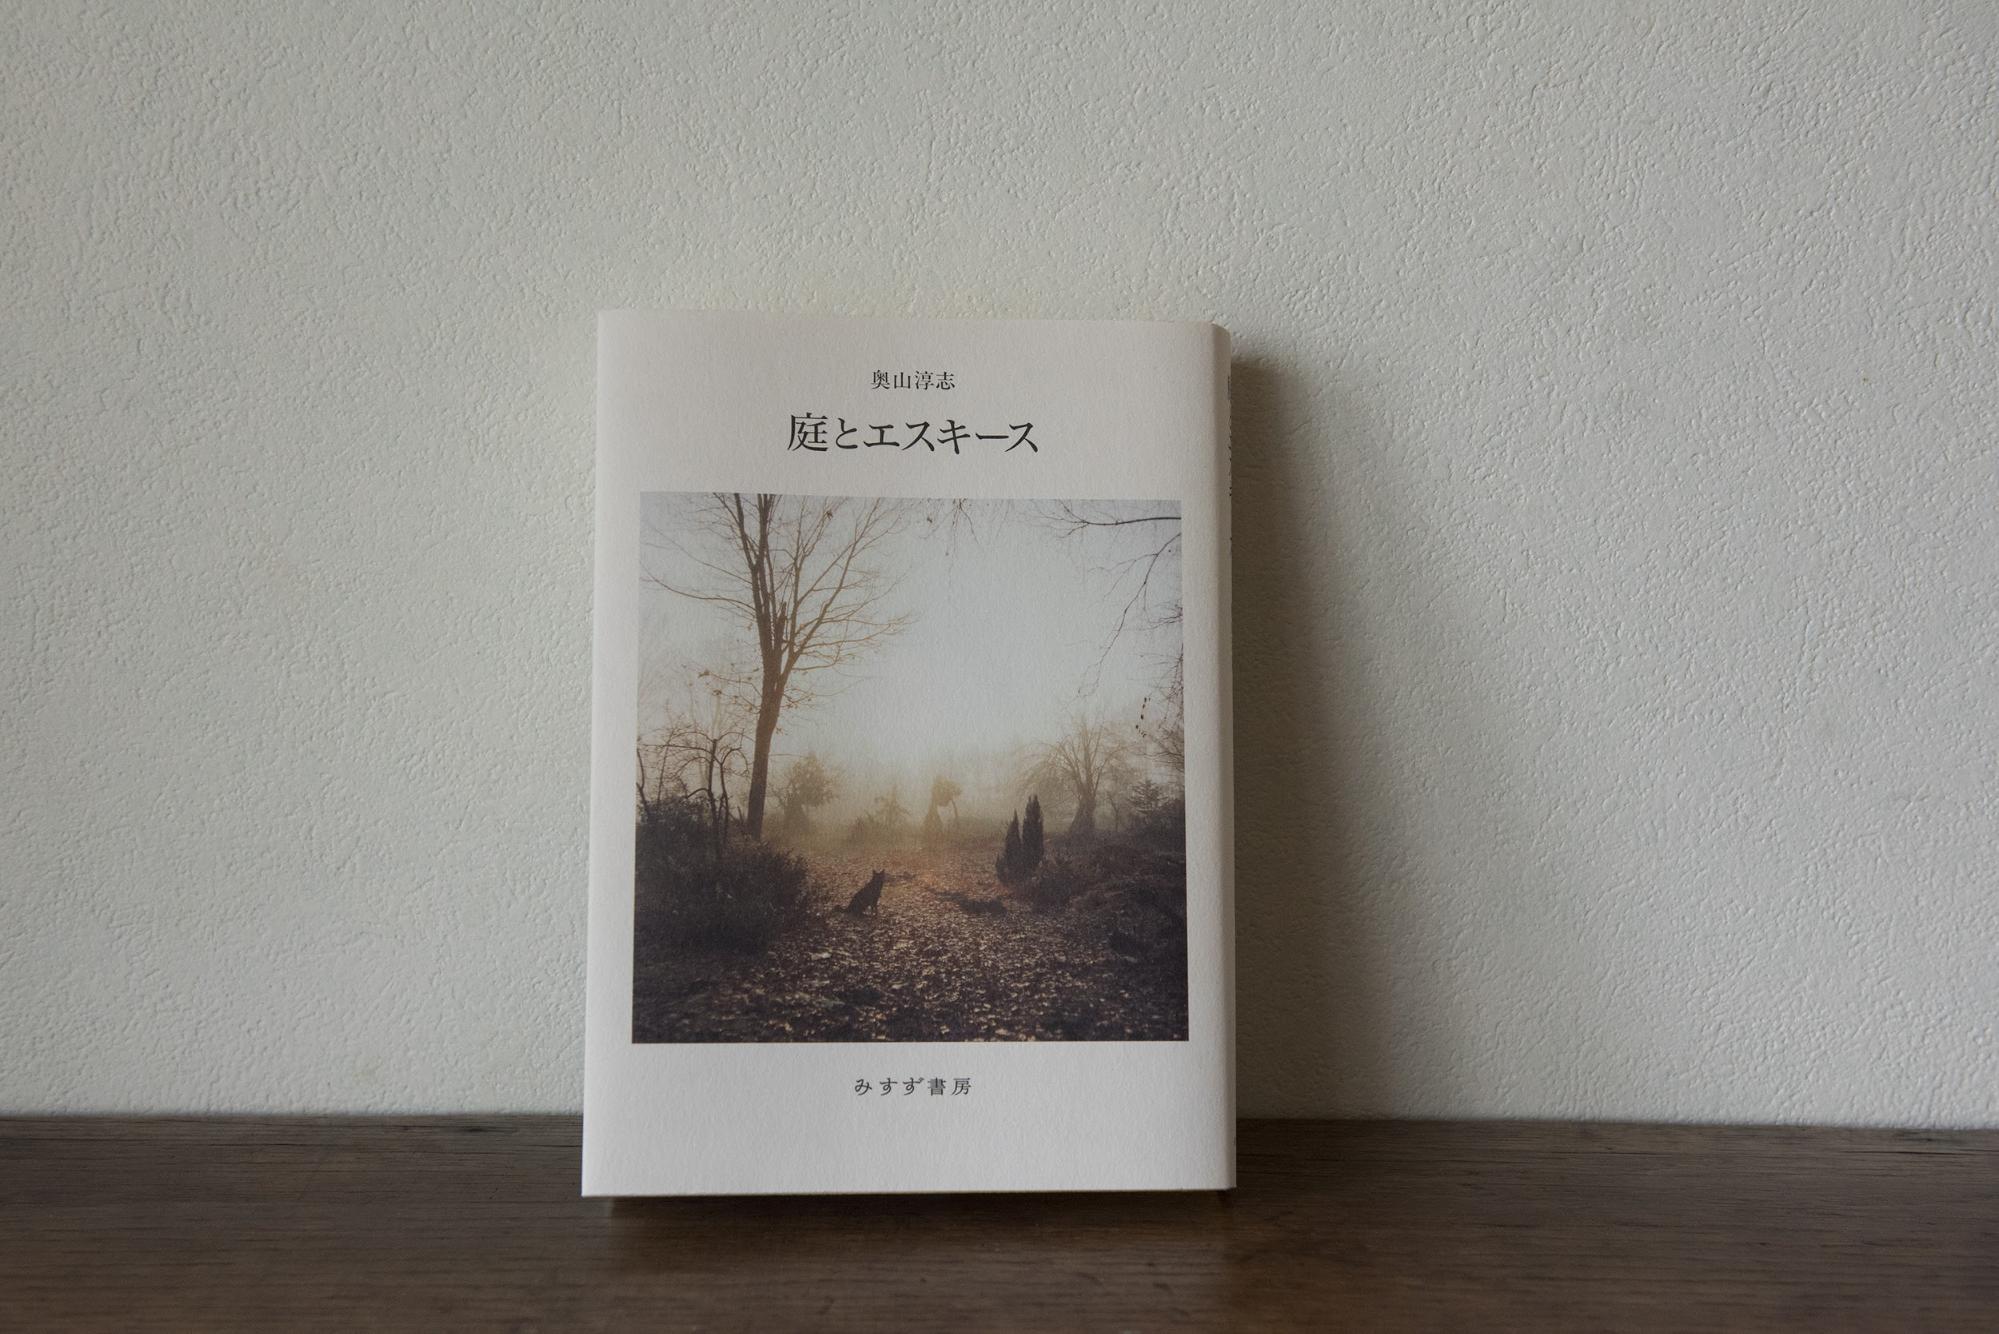 藤村健一朗・おこもり時間に読みたい本・庭とエスキース